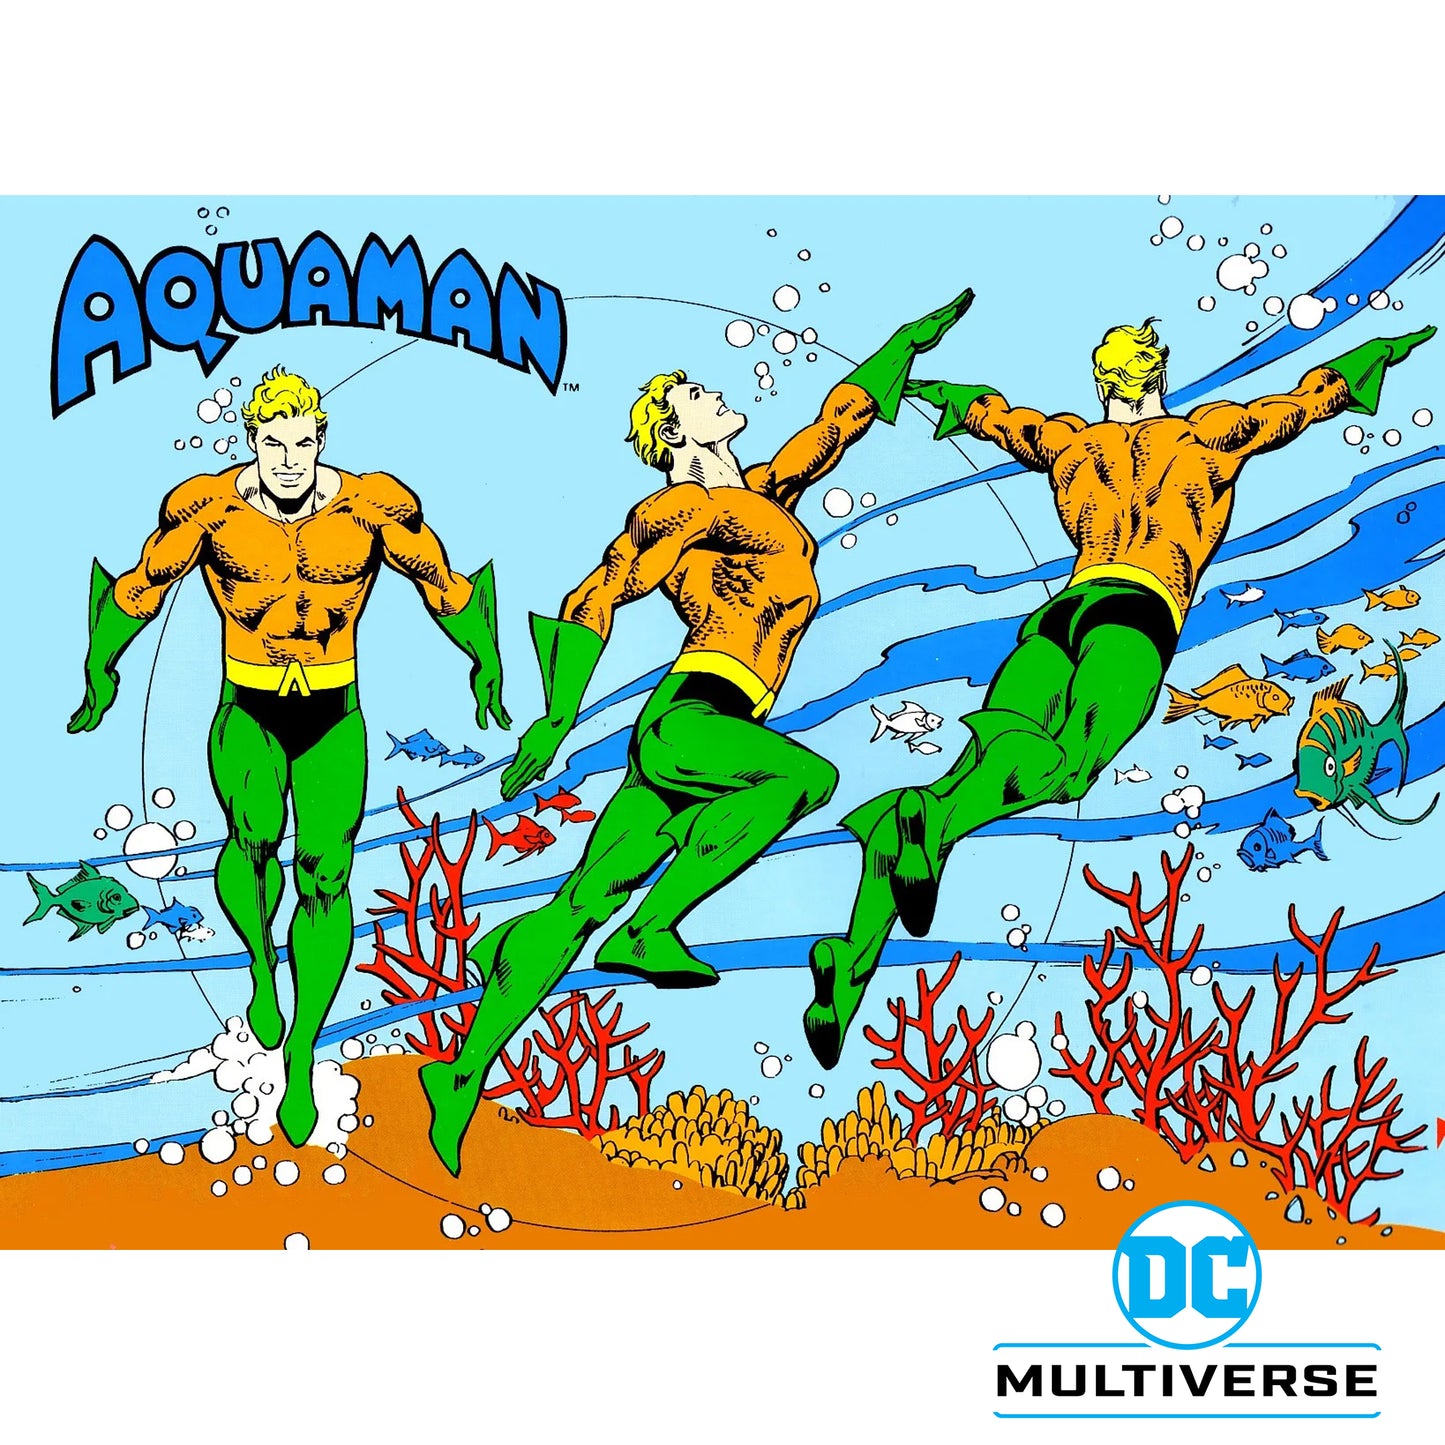 DC Multiverse Aquaman Classics